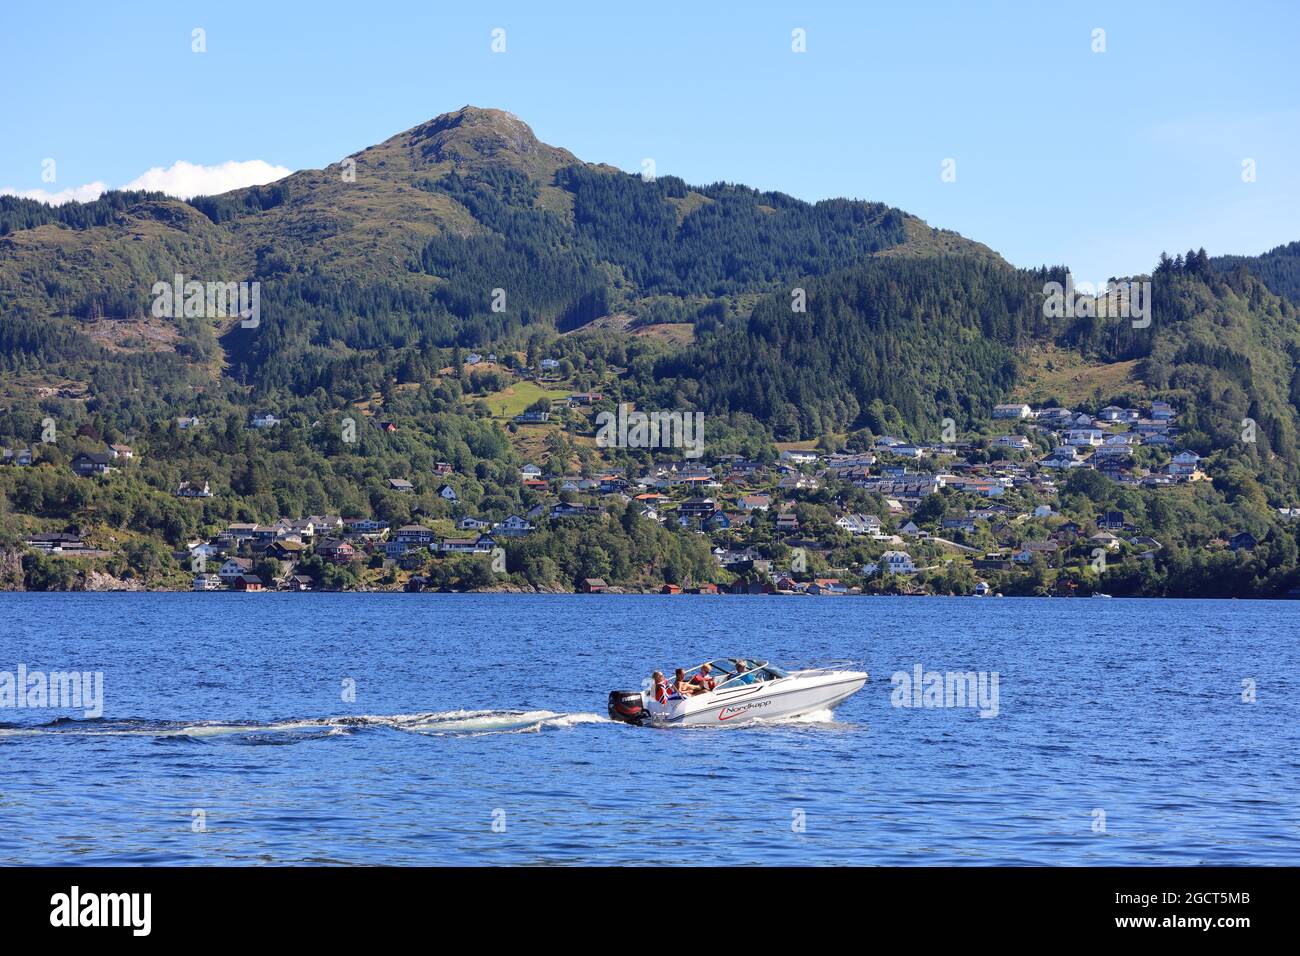 SALHUSFJORDEN, NORWEGEN - 24. JULI 2020: Menschen fahren im Salhusfjord mit dem Motorboot. Norwegen hatte im Jahr 2015 8.8 Millionen ausländische Besucher. Stockfoto